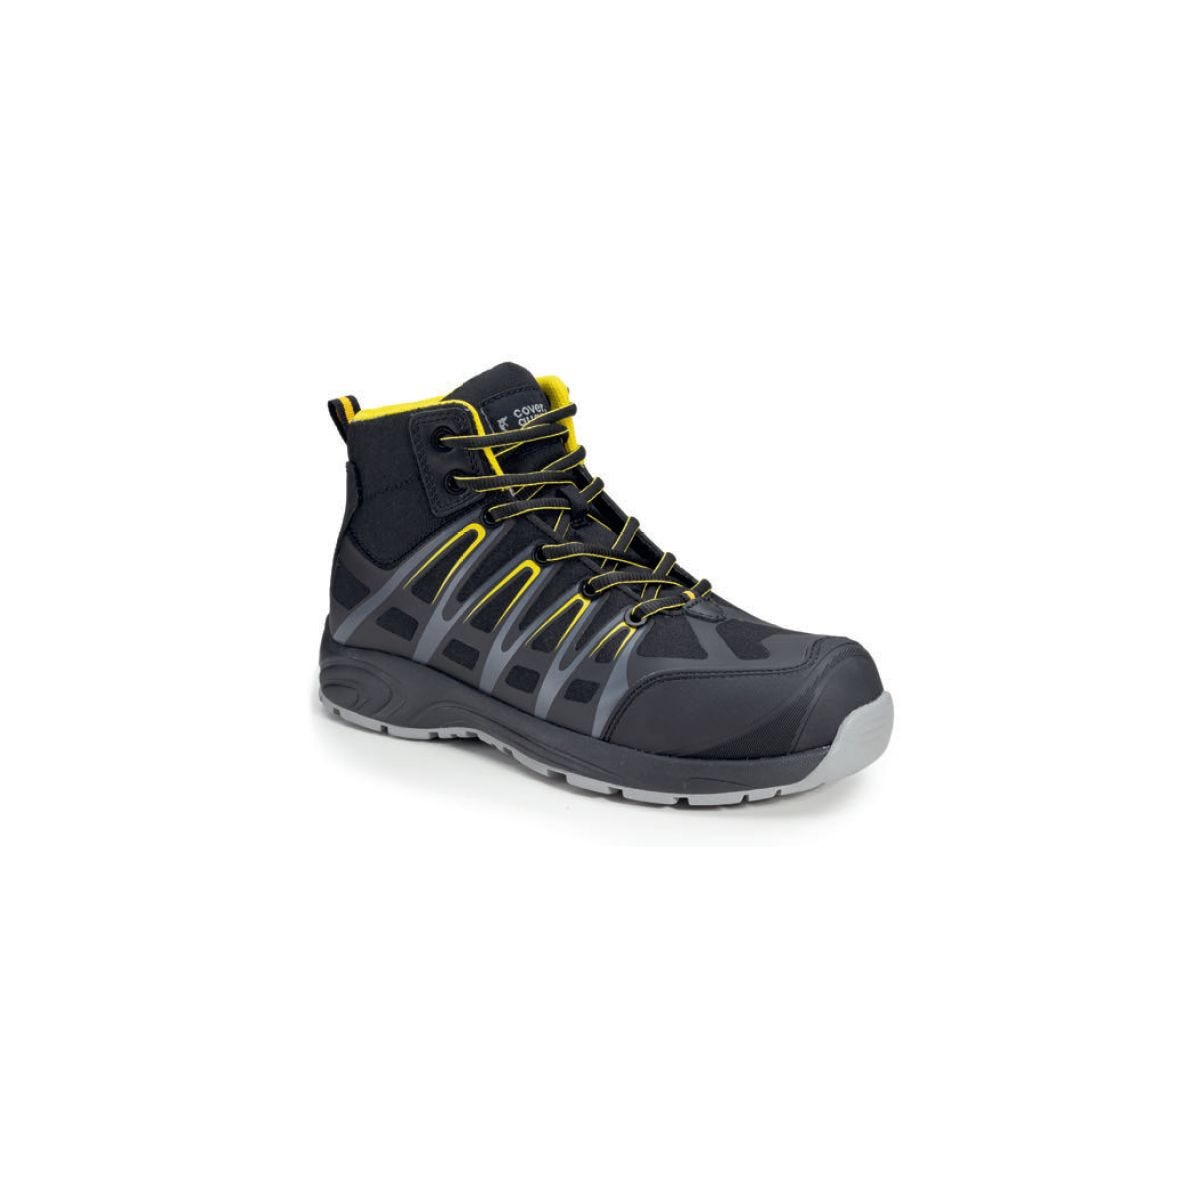 Chaussures de sécurité hautes ALUNI S3 noir et jaune - Coverguard - Taille 42 0